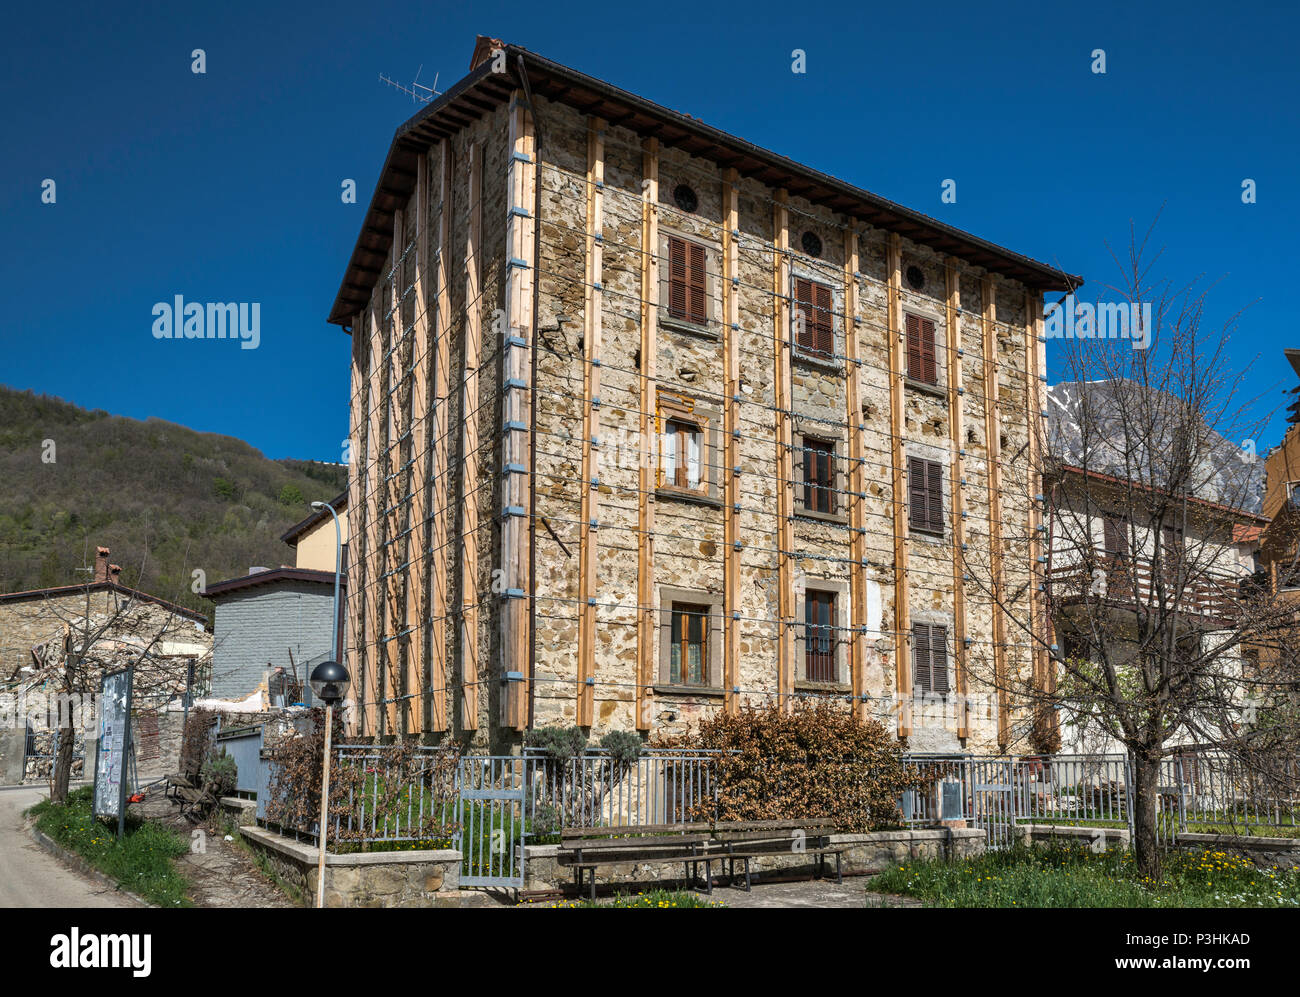 Edificio abbandonato protetti da traverse di acciaio nel villaggio di Piedilama, distrutta dai terremoti in ottobre 2016, Appennino Centrale, Marche, Italia Foto Stock